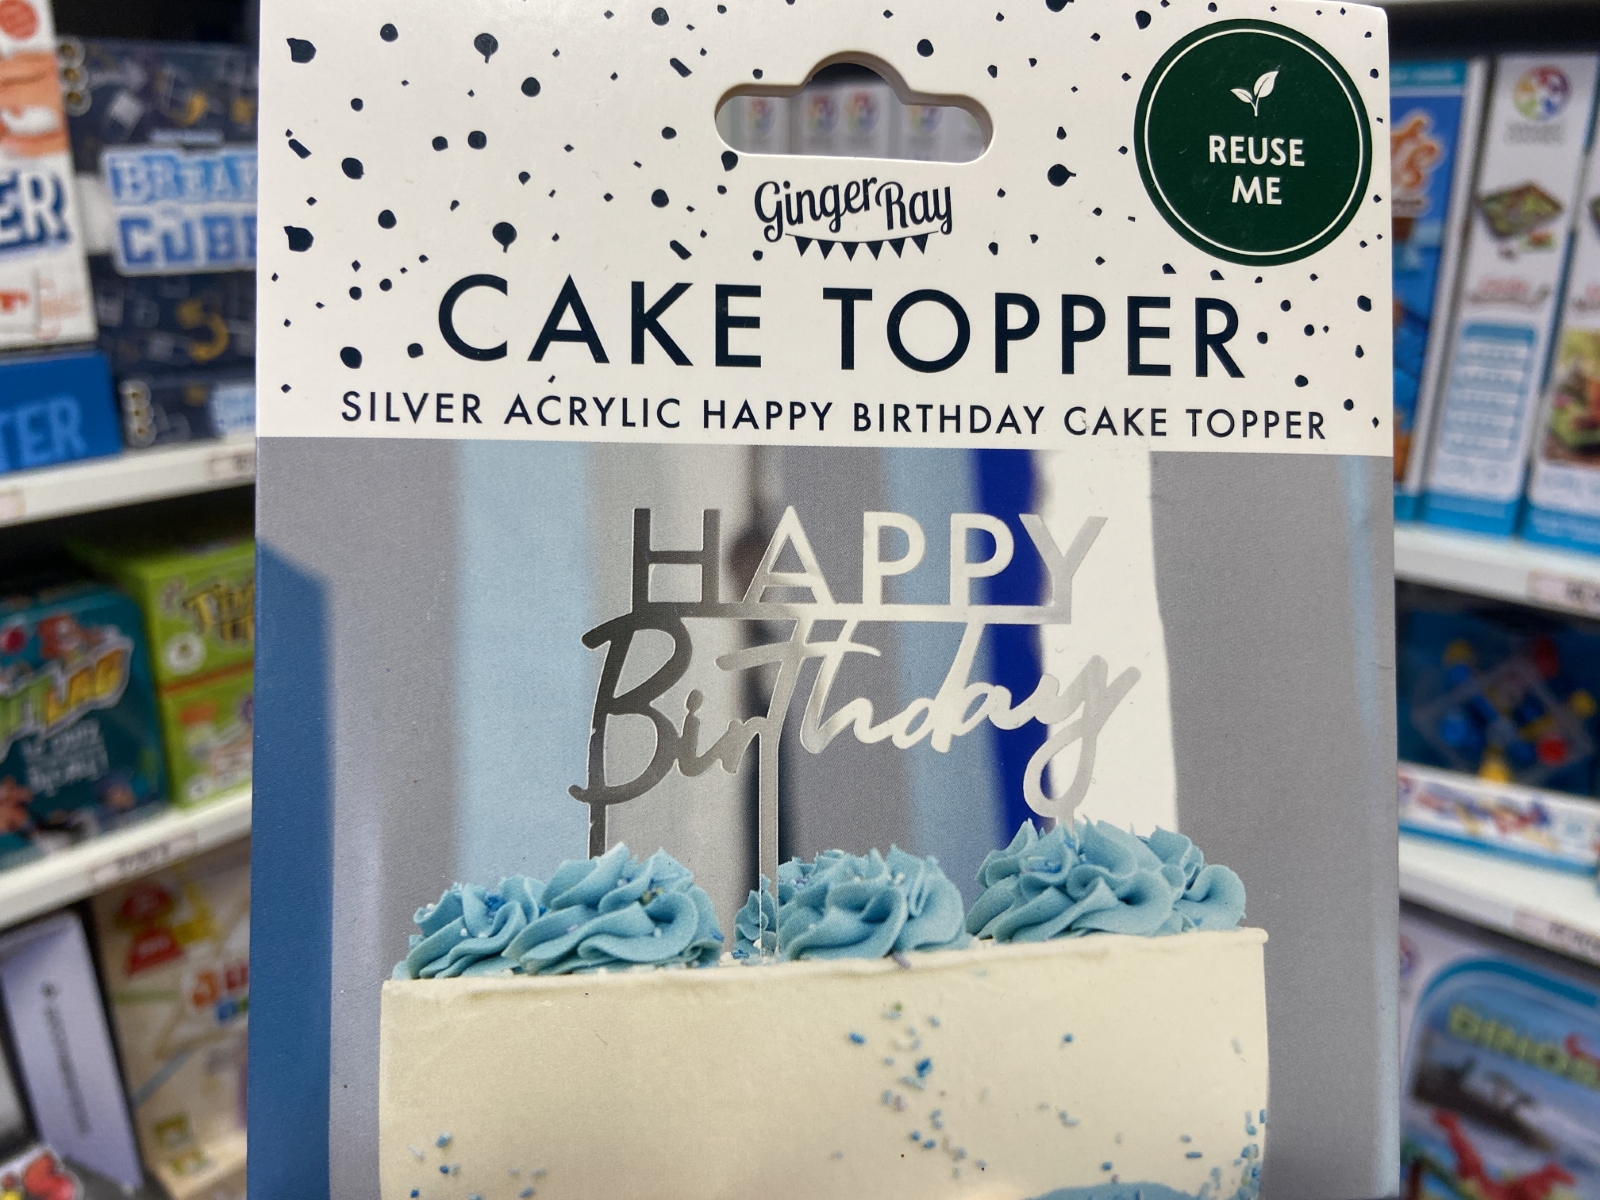 1 Banderole Déco de Gâteau Happy Dino pour l'anniversaire de votre